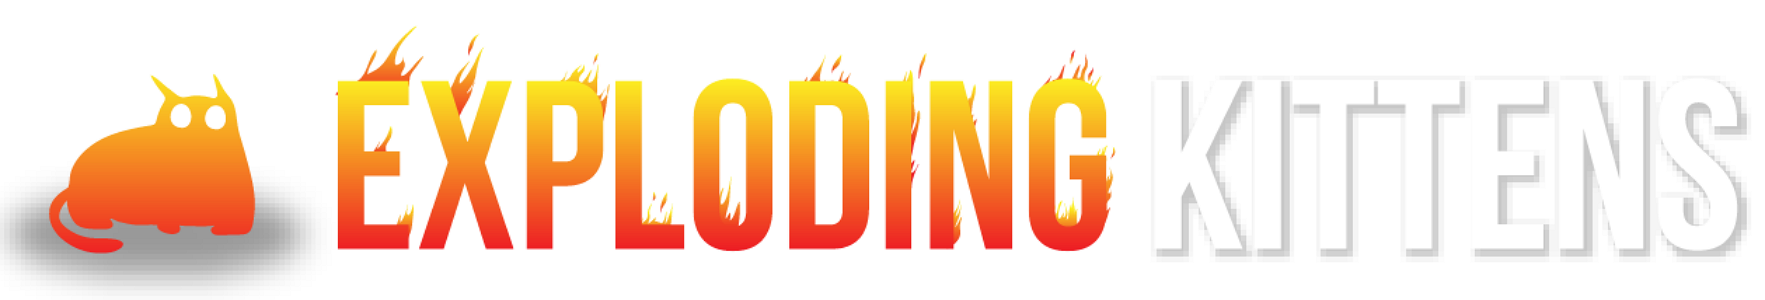 exploding-kittens-logo